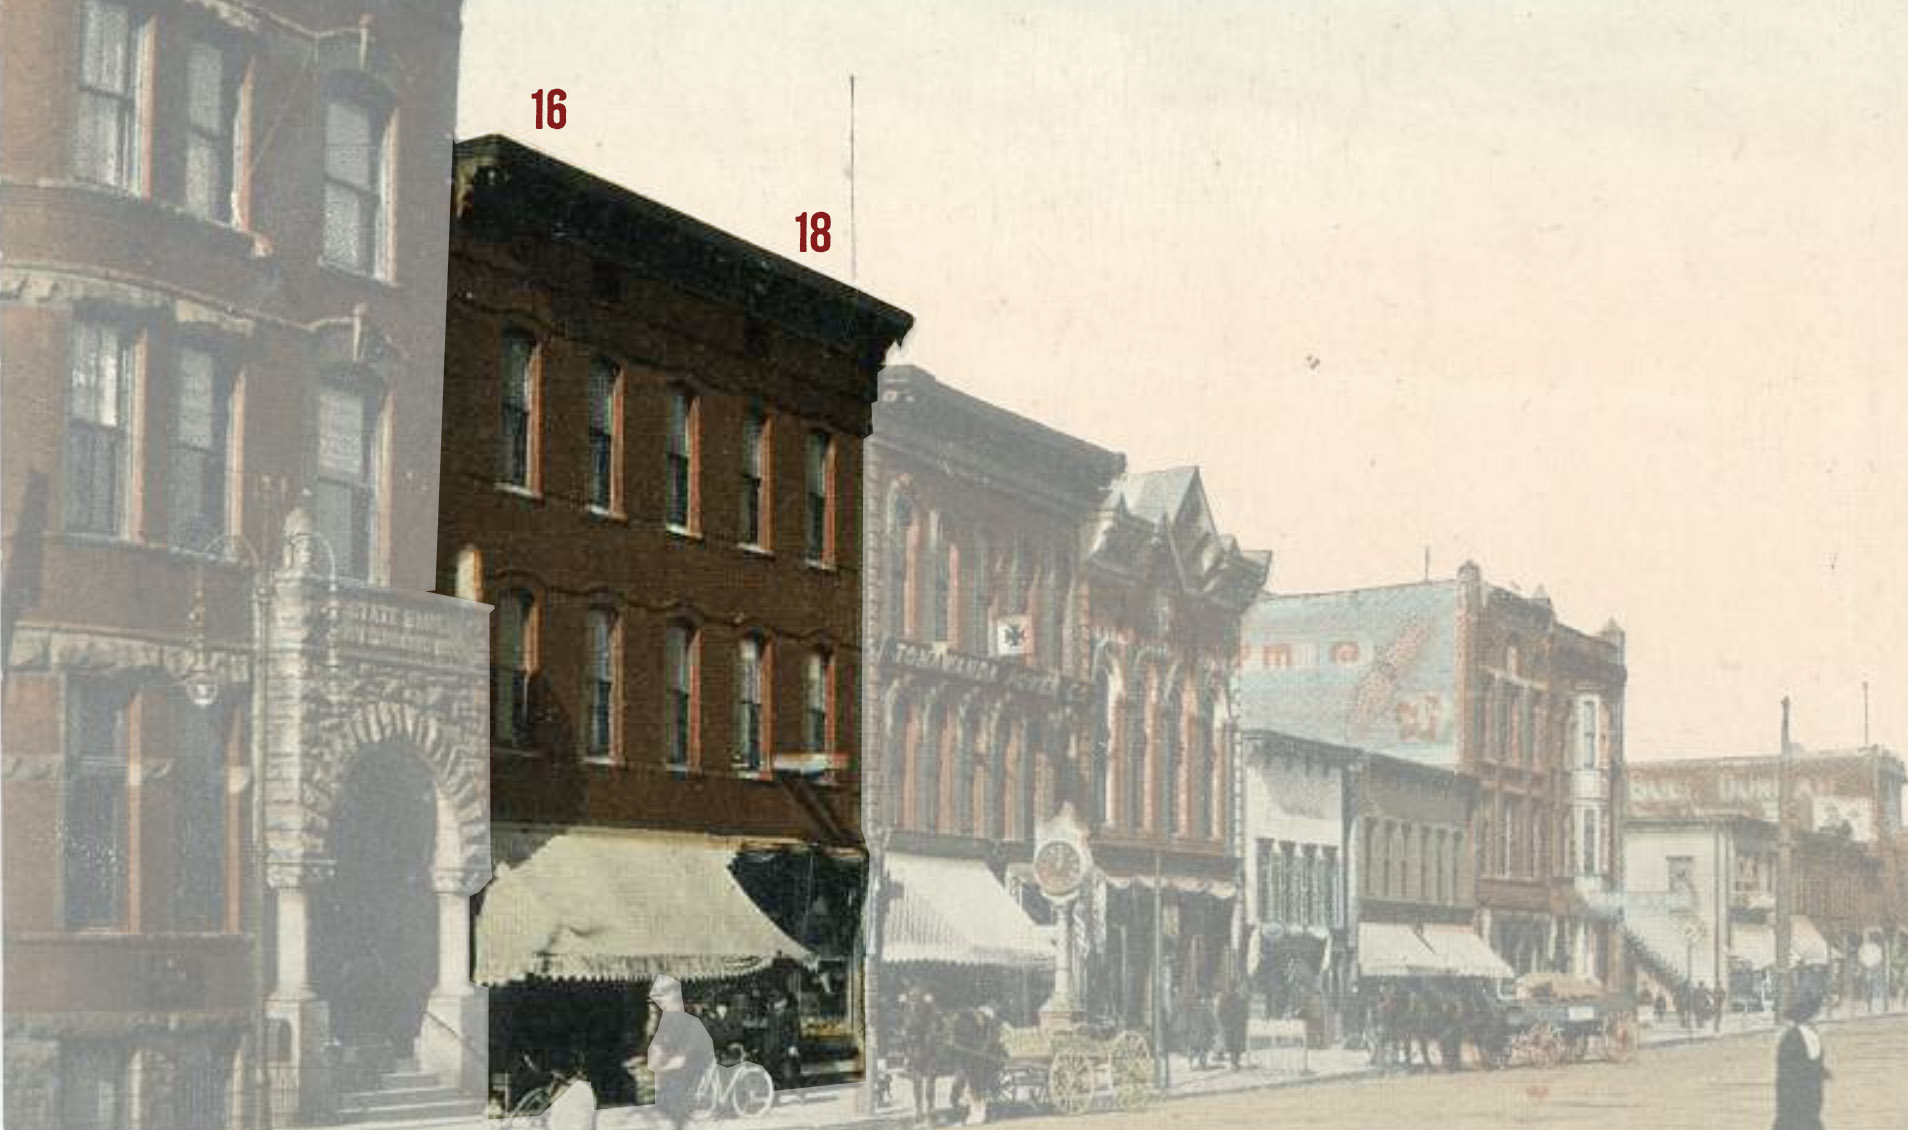 16-18 Webster Street, c. 1910